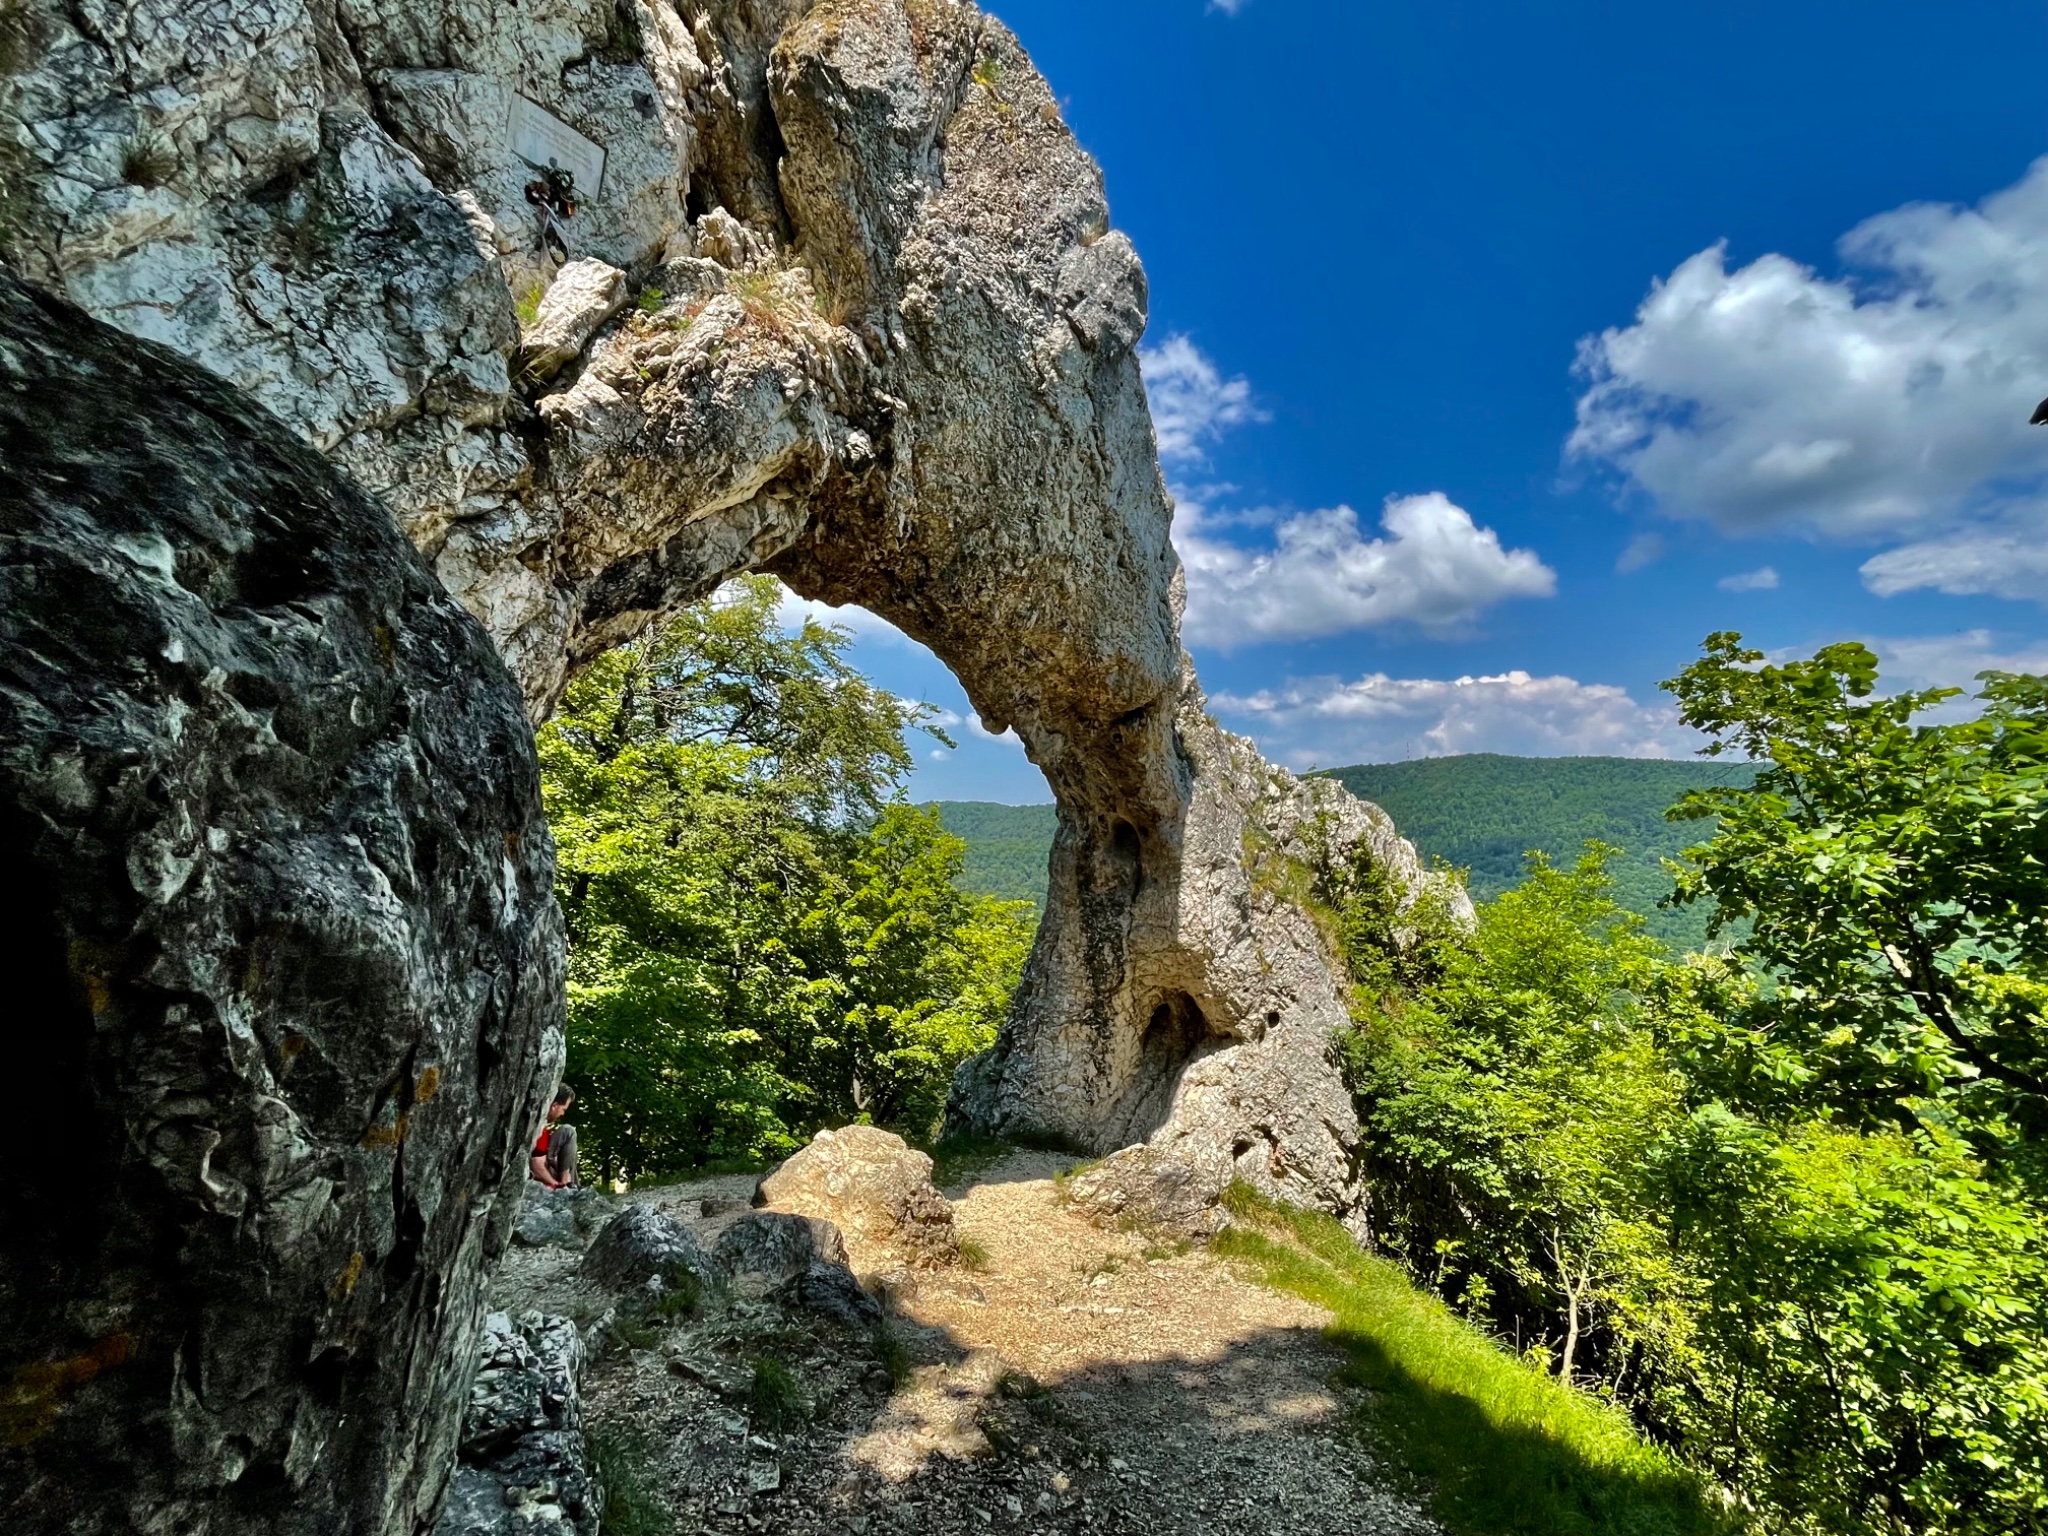 5 lenyűgöző látnivaló és túraútvonal a Pilis-hegységben